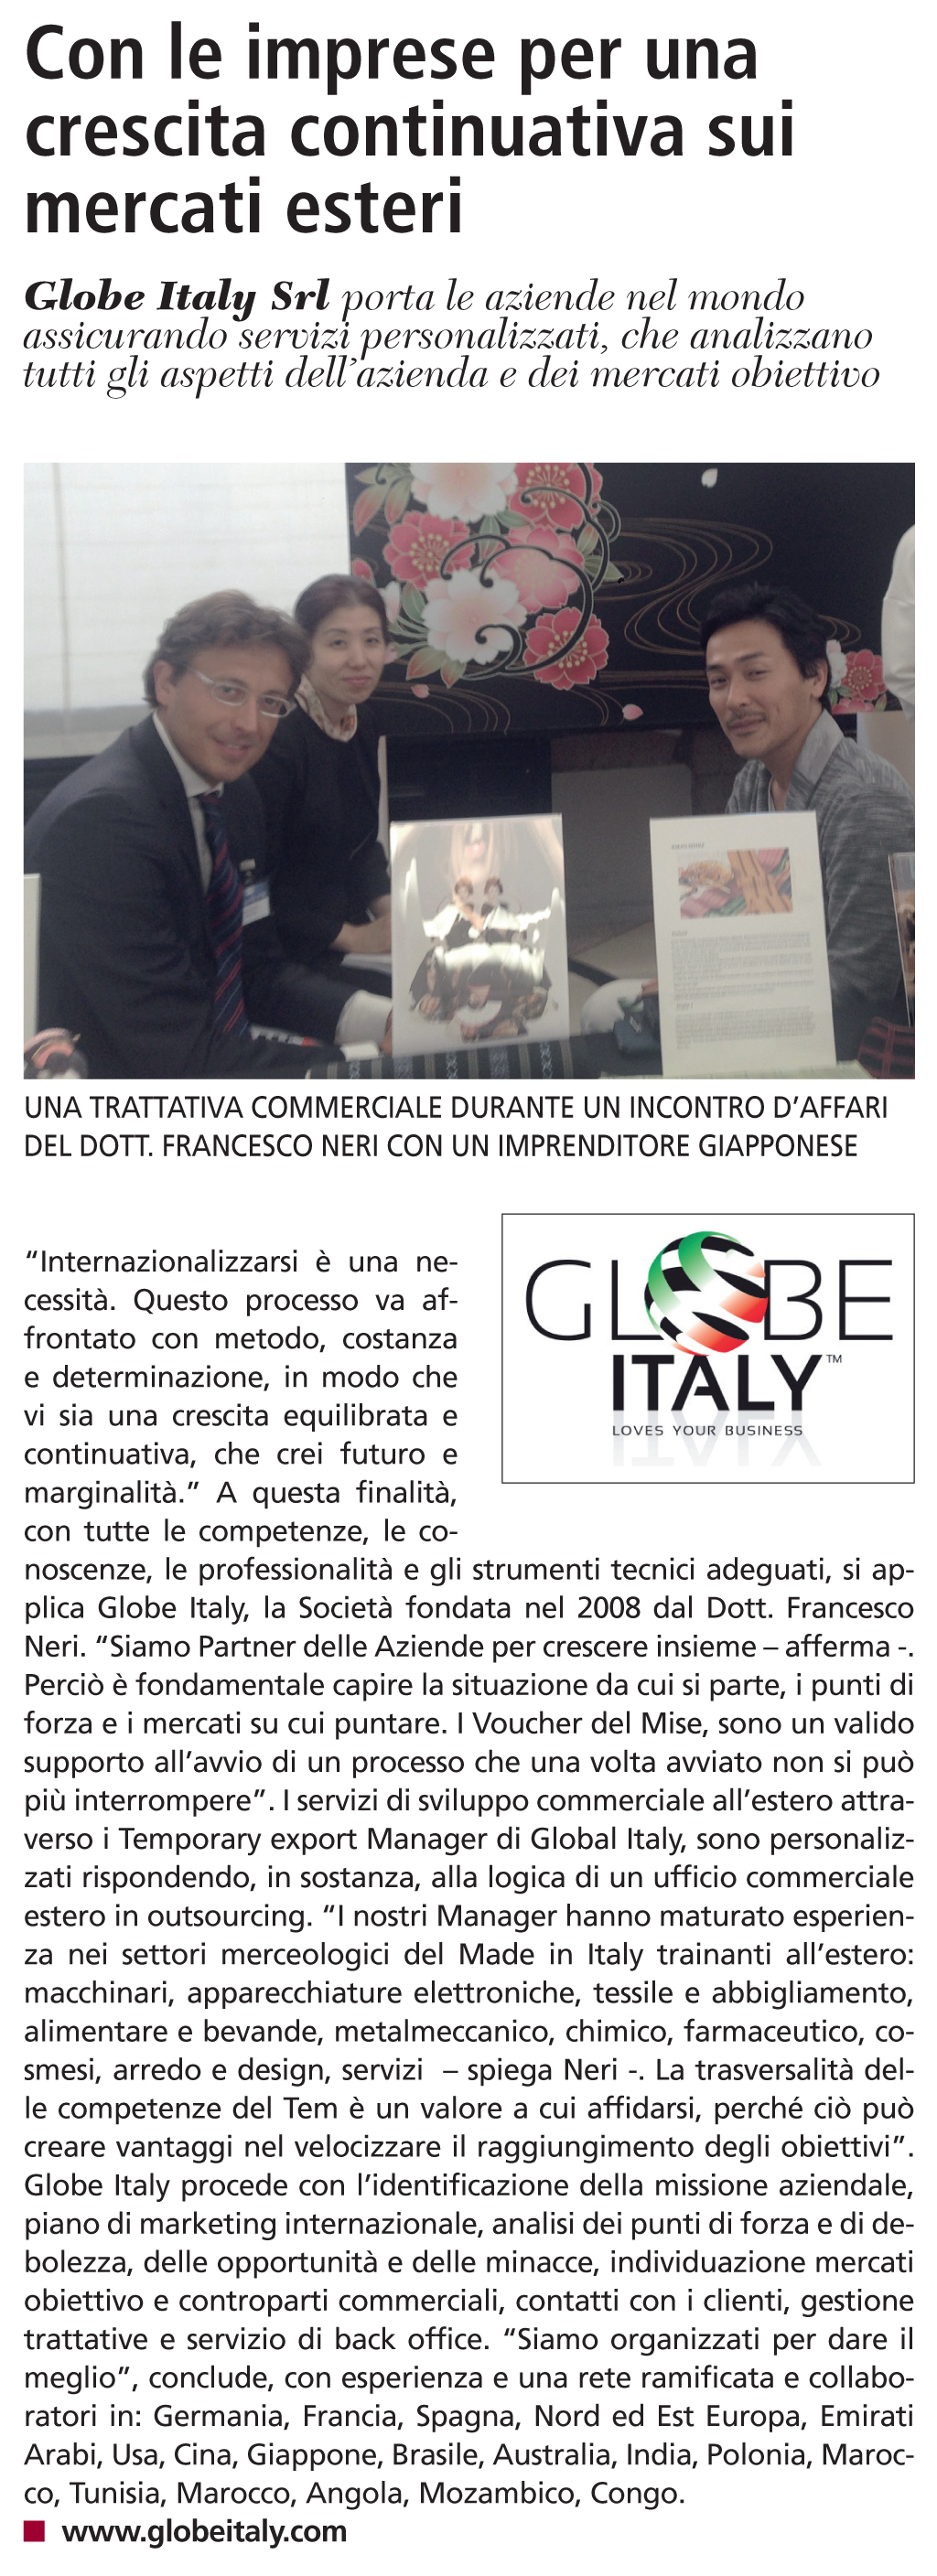 Con le imprese per una crescita continuativa sui mercati esteri - Globe Italy Sole 24 Ore - 3/12/2015